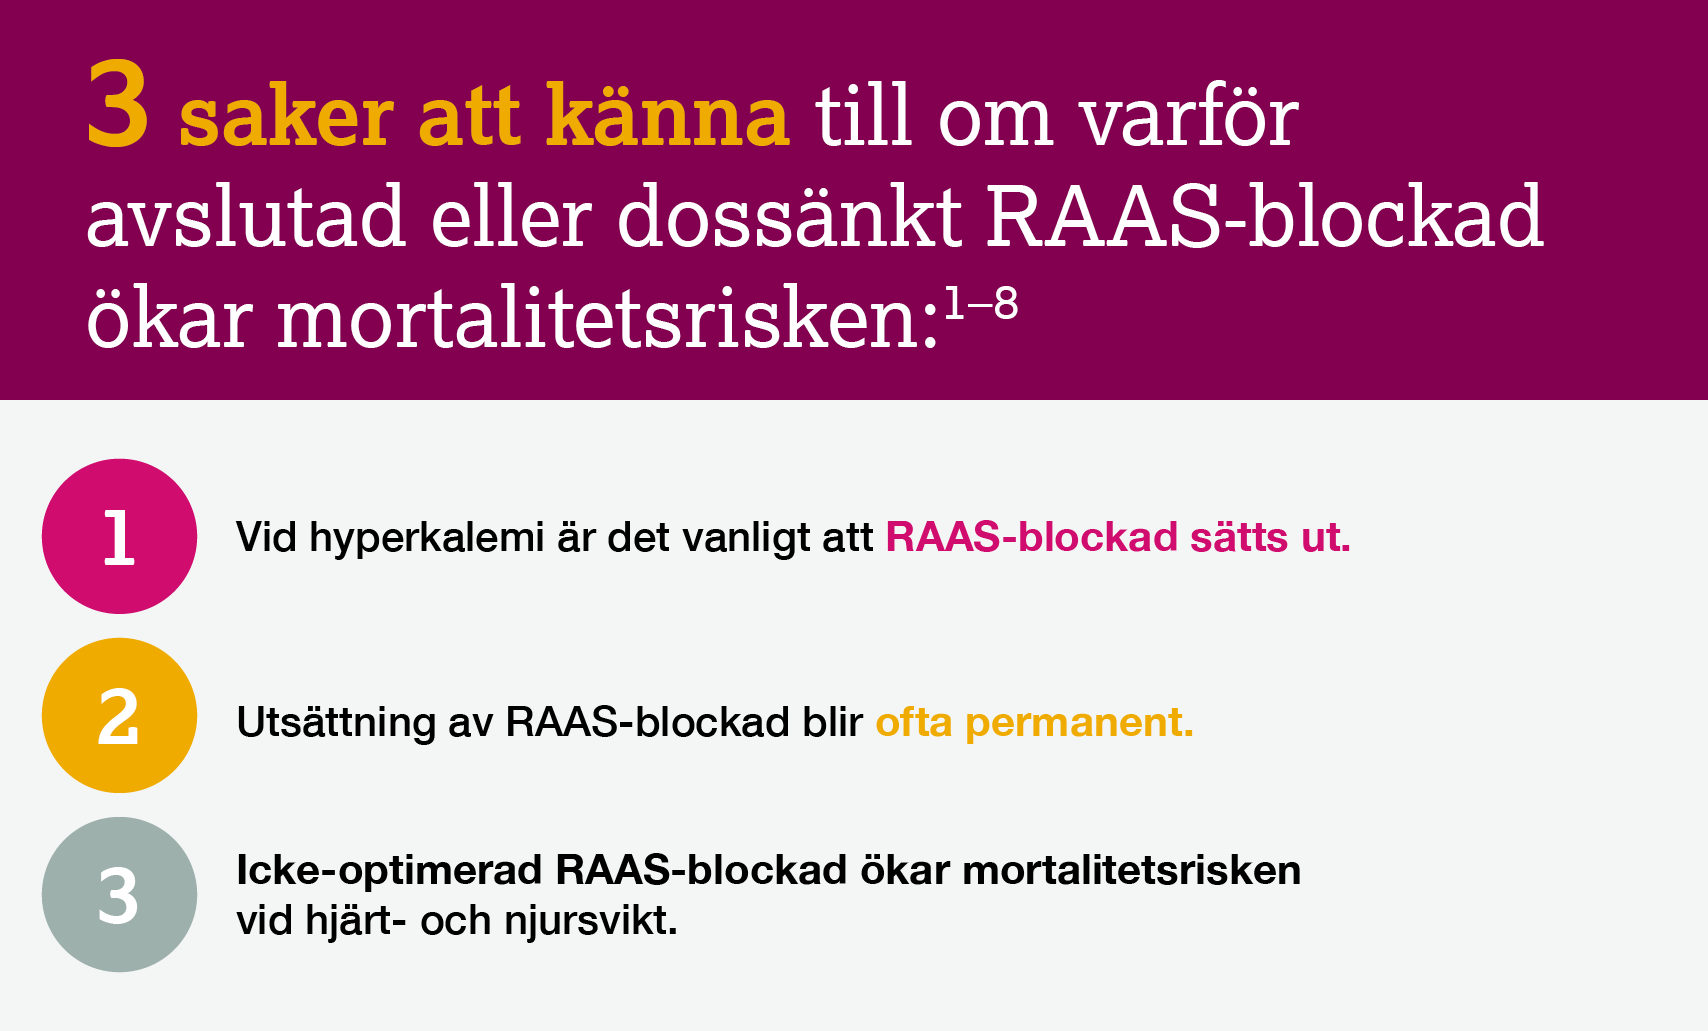 3 saker att känna till om varför avslutad eller dossänkt RAAS-blockad ökar mortalitetsrisken. Vid hyperkalemi är det vanligt att RAAS-blockad sätts ut. Utsättning av RAAS-blockad blir ofta permanent. Icke-optimerad RAAS-blockad ökad mortaliteten vid hjärt- och njursvikt.